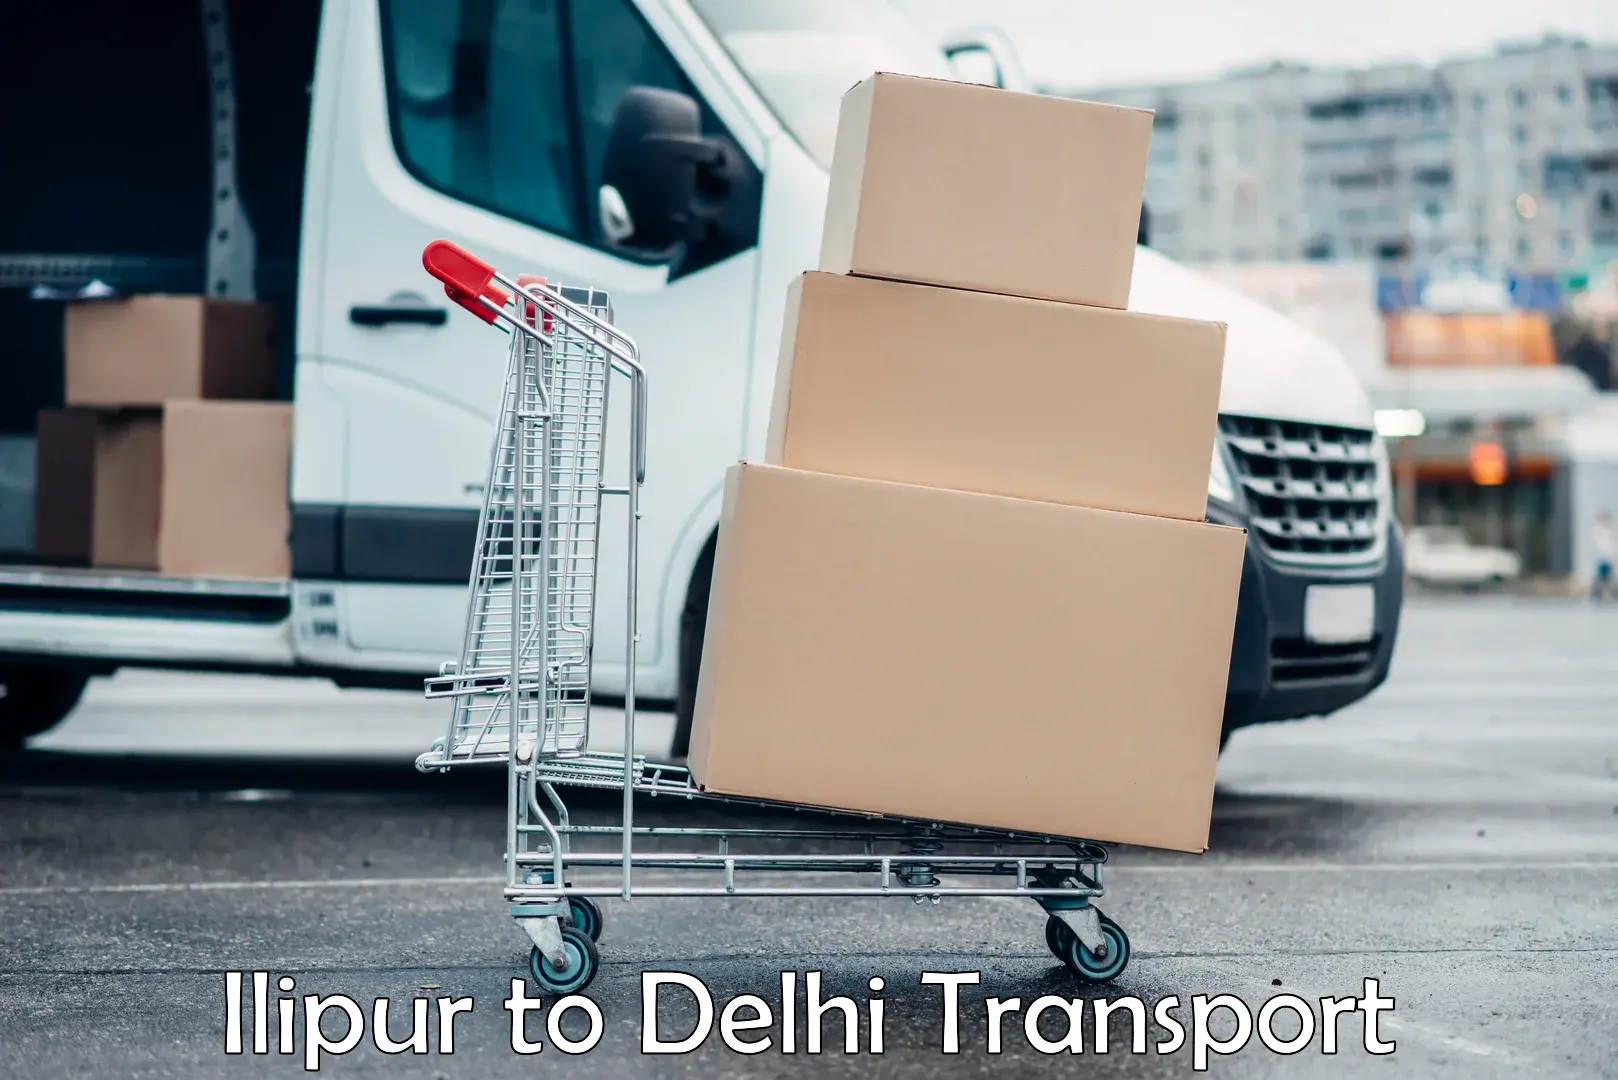 Intercity goods transport Ilipur to Ashok Vihar